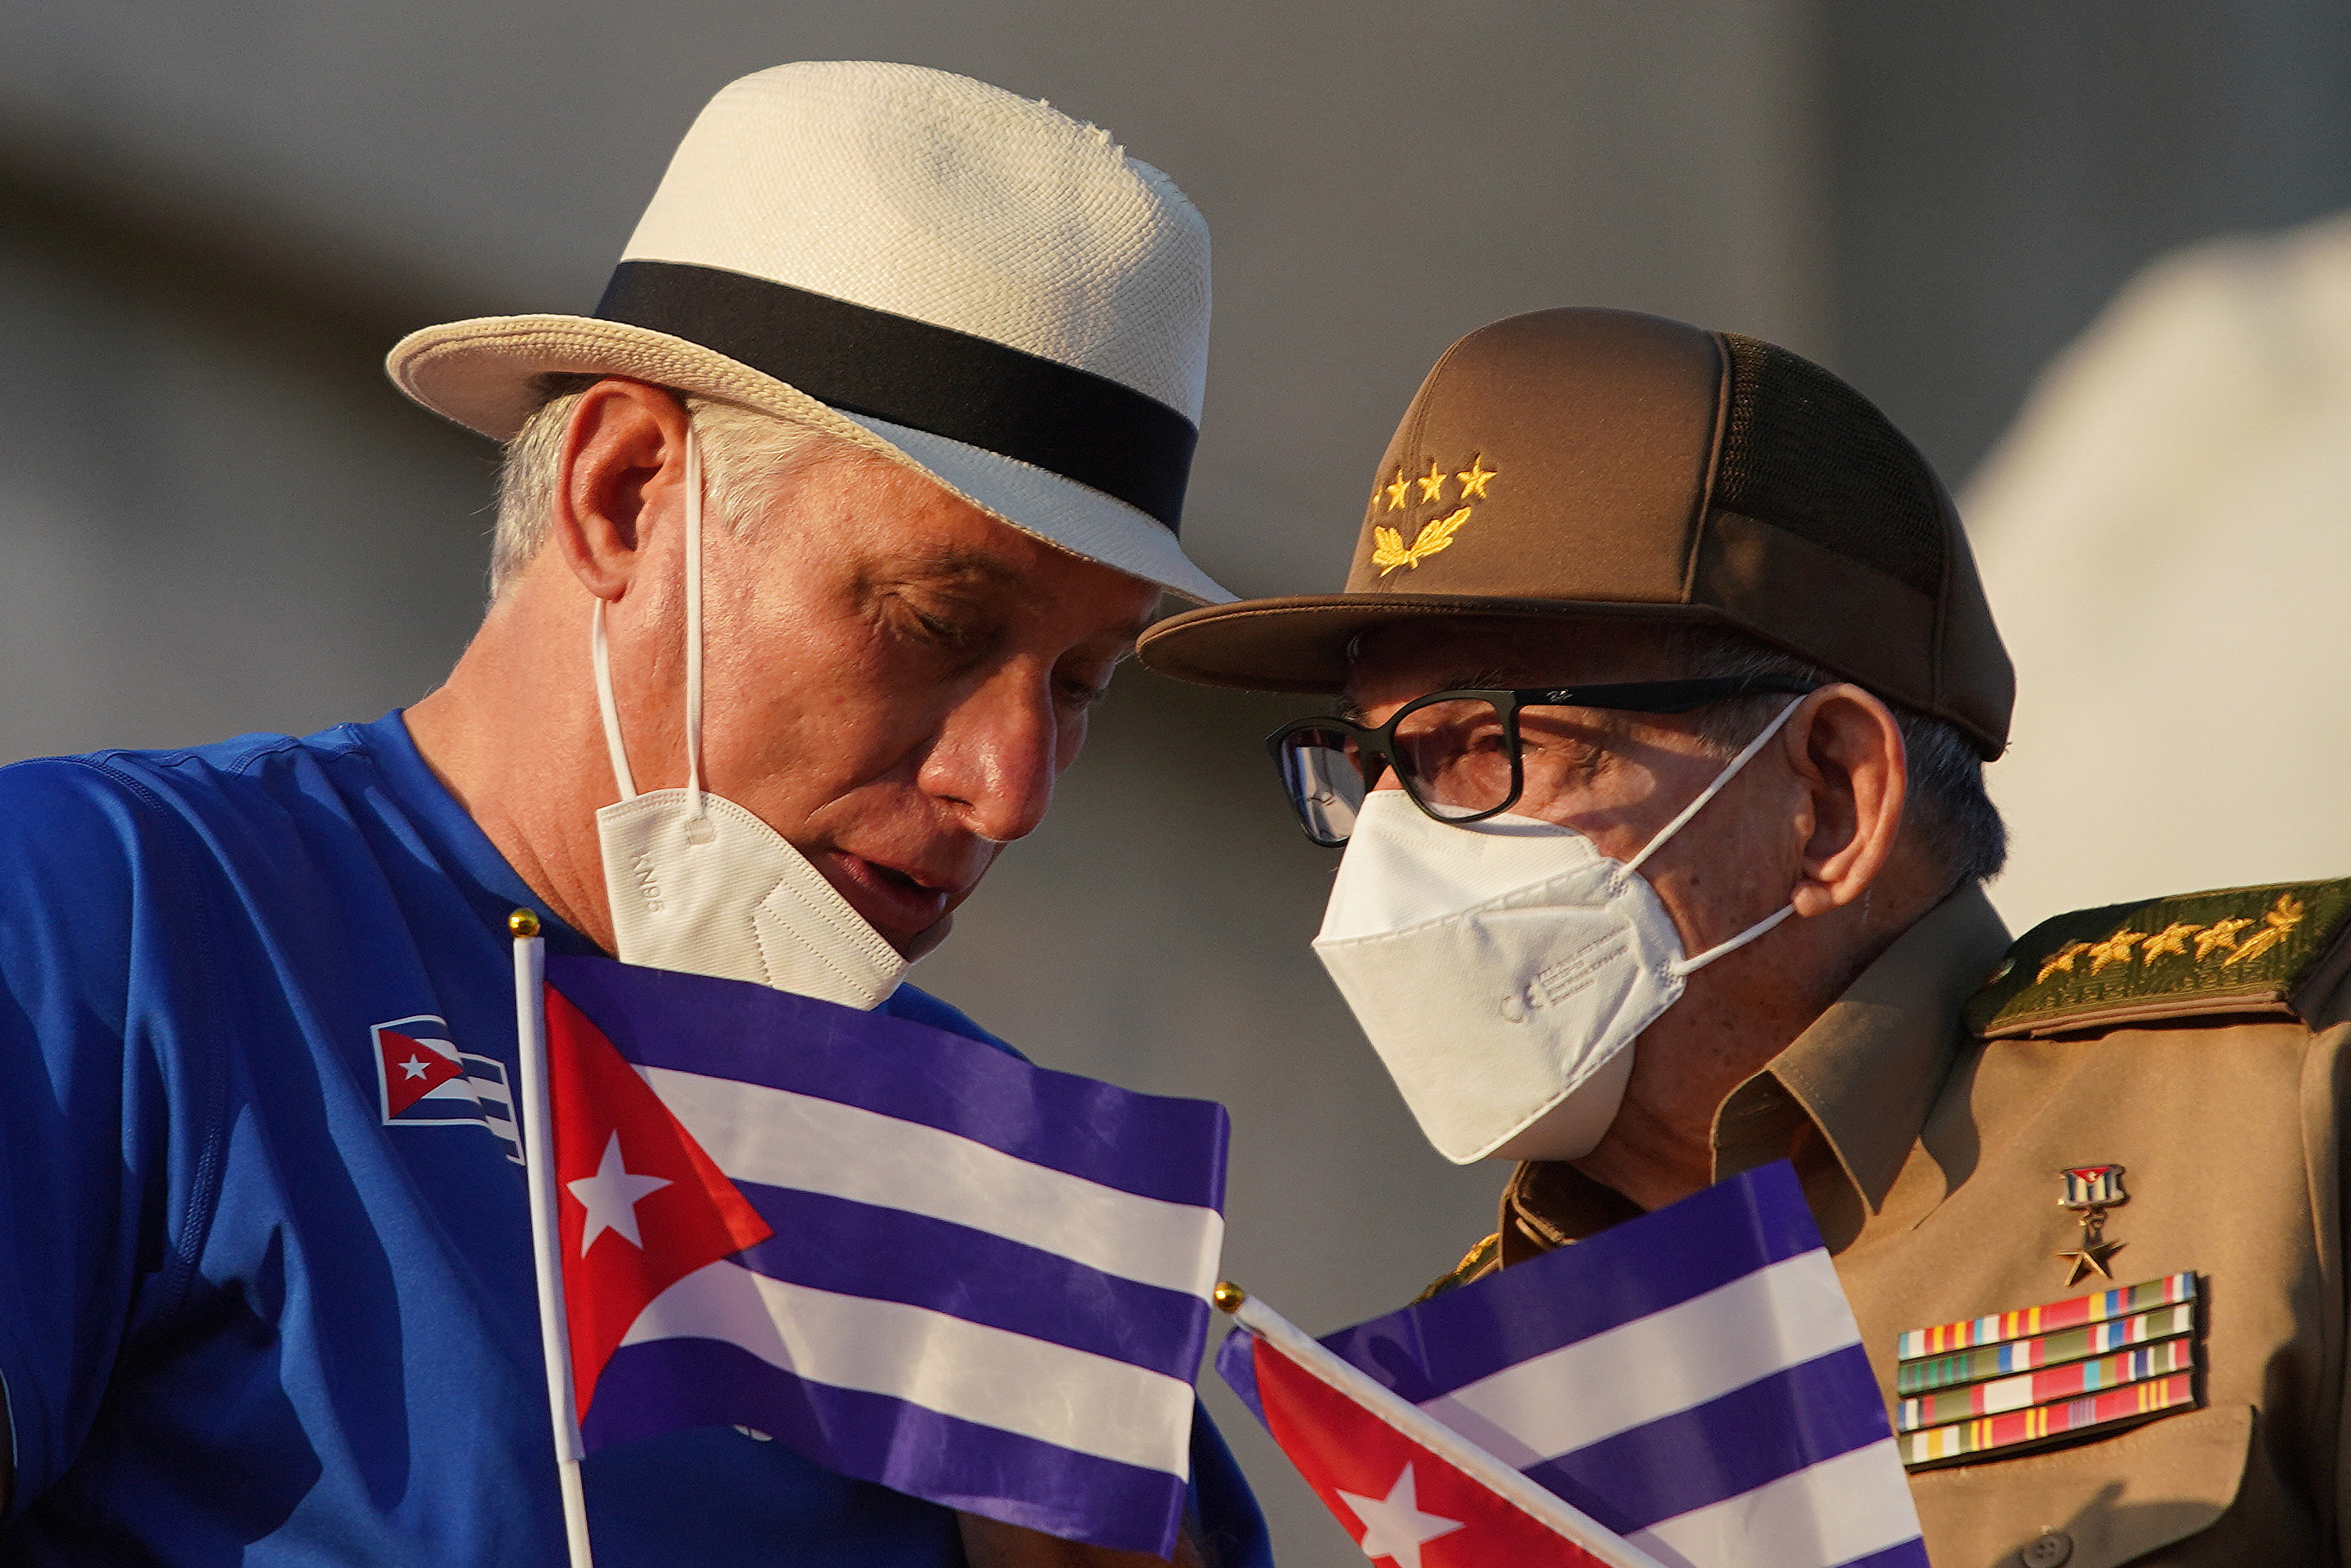 Pese a las promesas de la dictadura, cada vez son más prolongados los apagones en Cuba (REUTERS/Alexandre Meneghini)